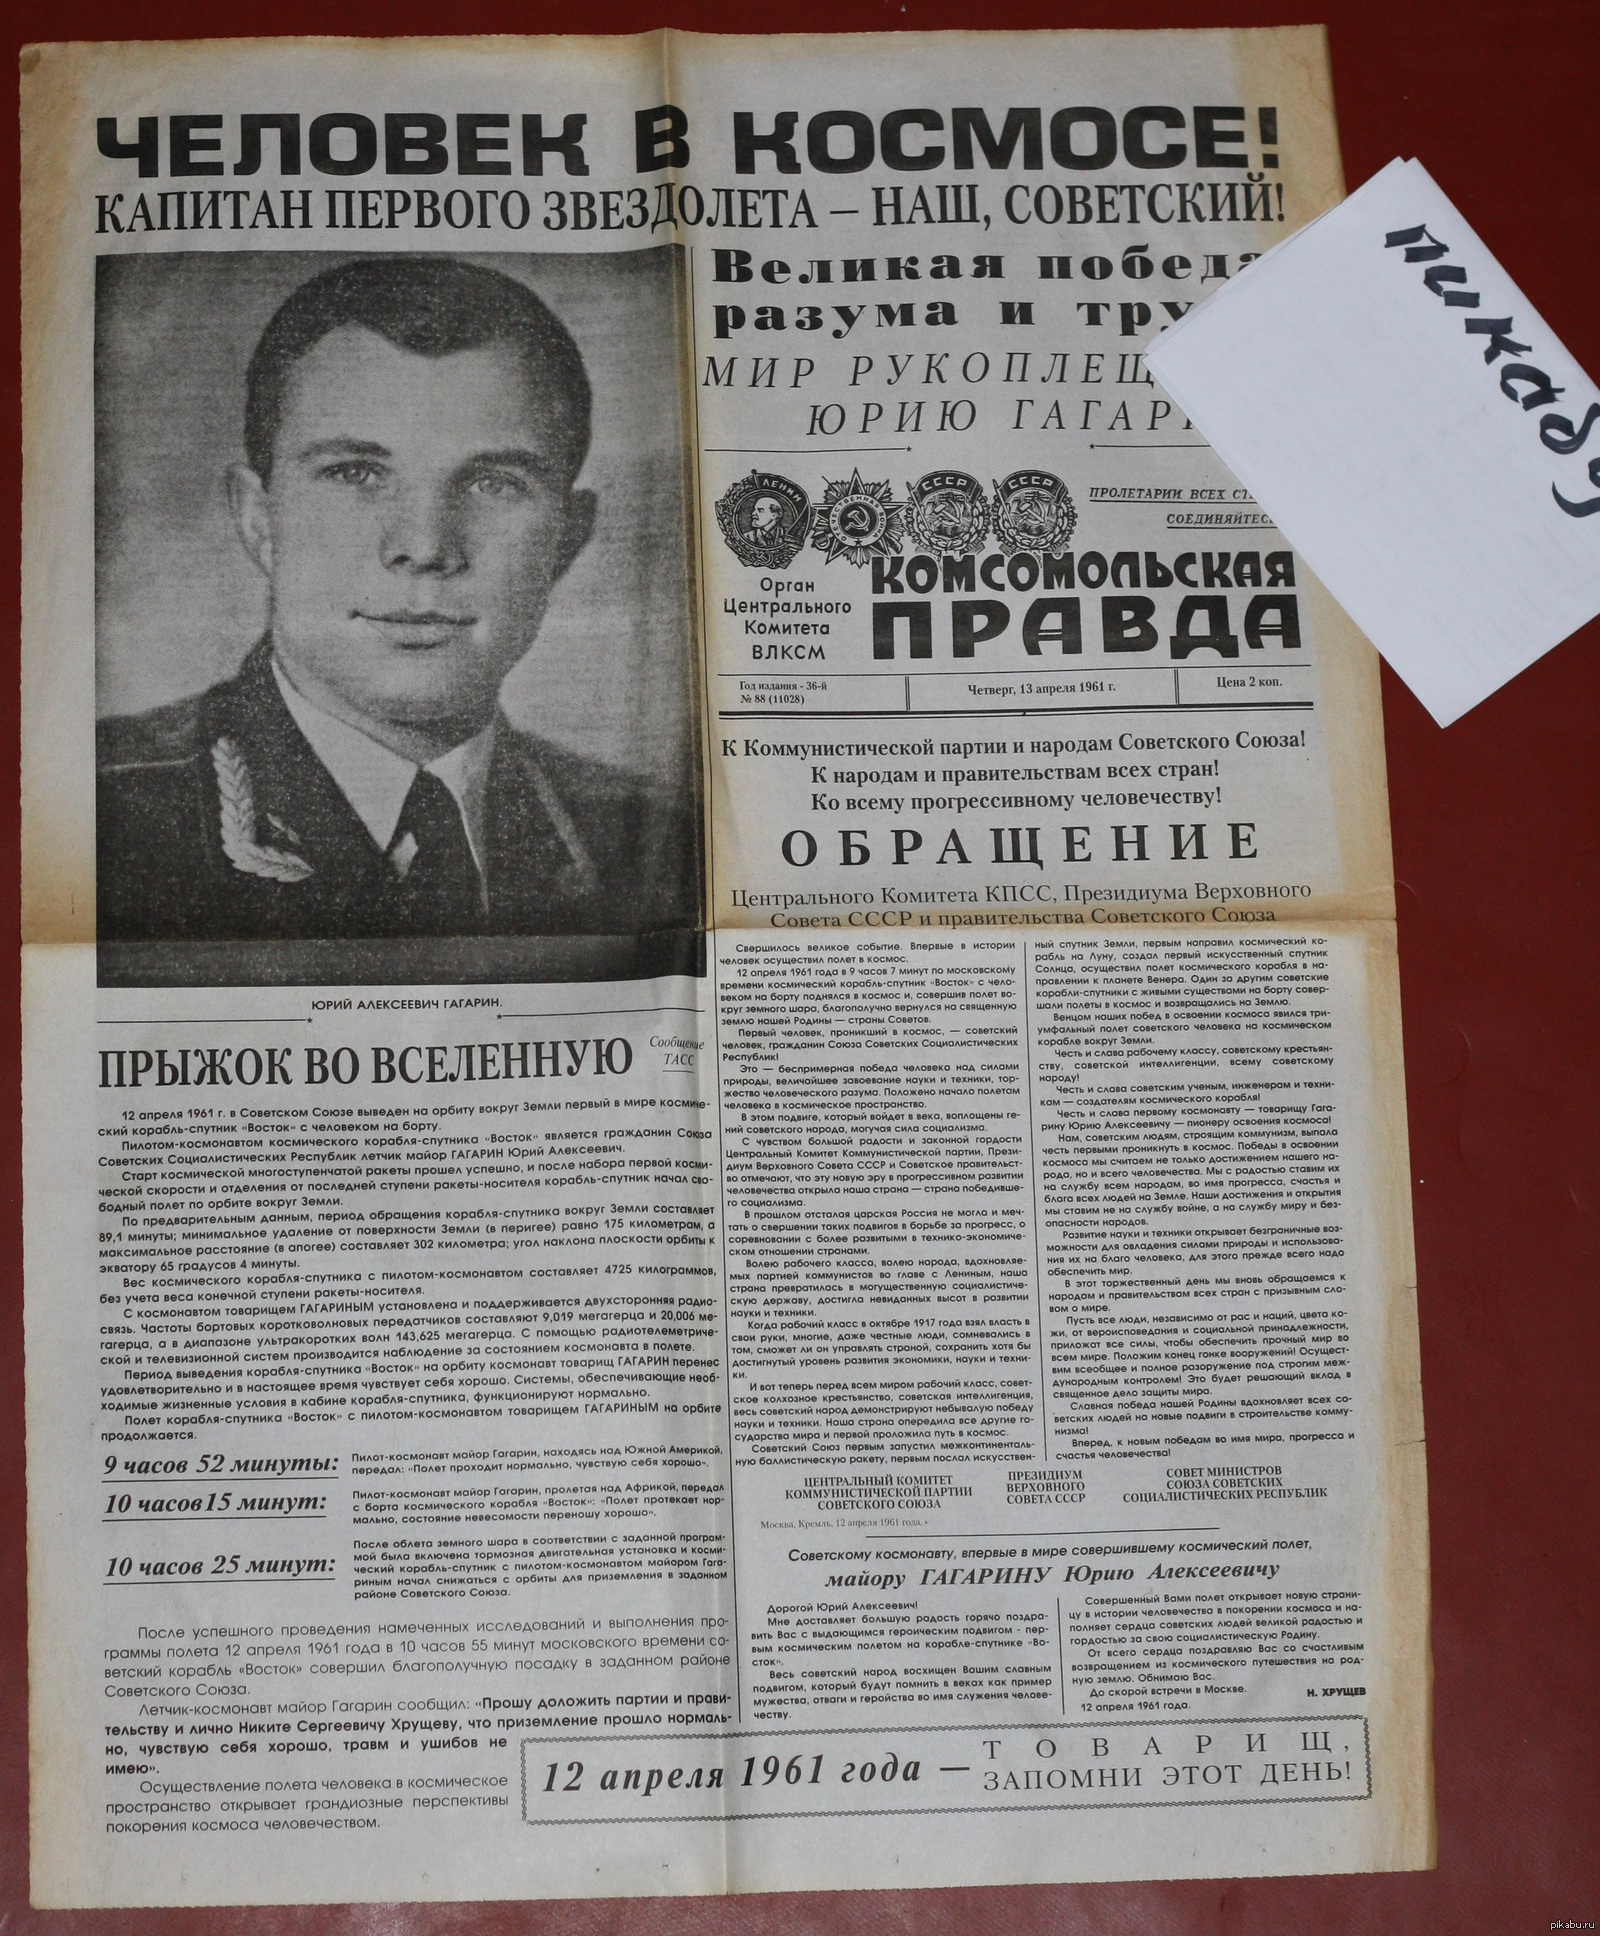 12 апреля 1961 какой день. Гагарин Комсомольская правда 1961. Гагарин 12 апреля 1961 Комсомольская правда. Газеты 12 апреля 1961 года. Газета правда 12 апреля 1961.